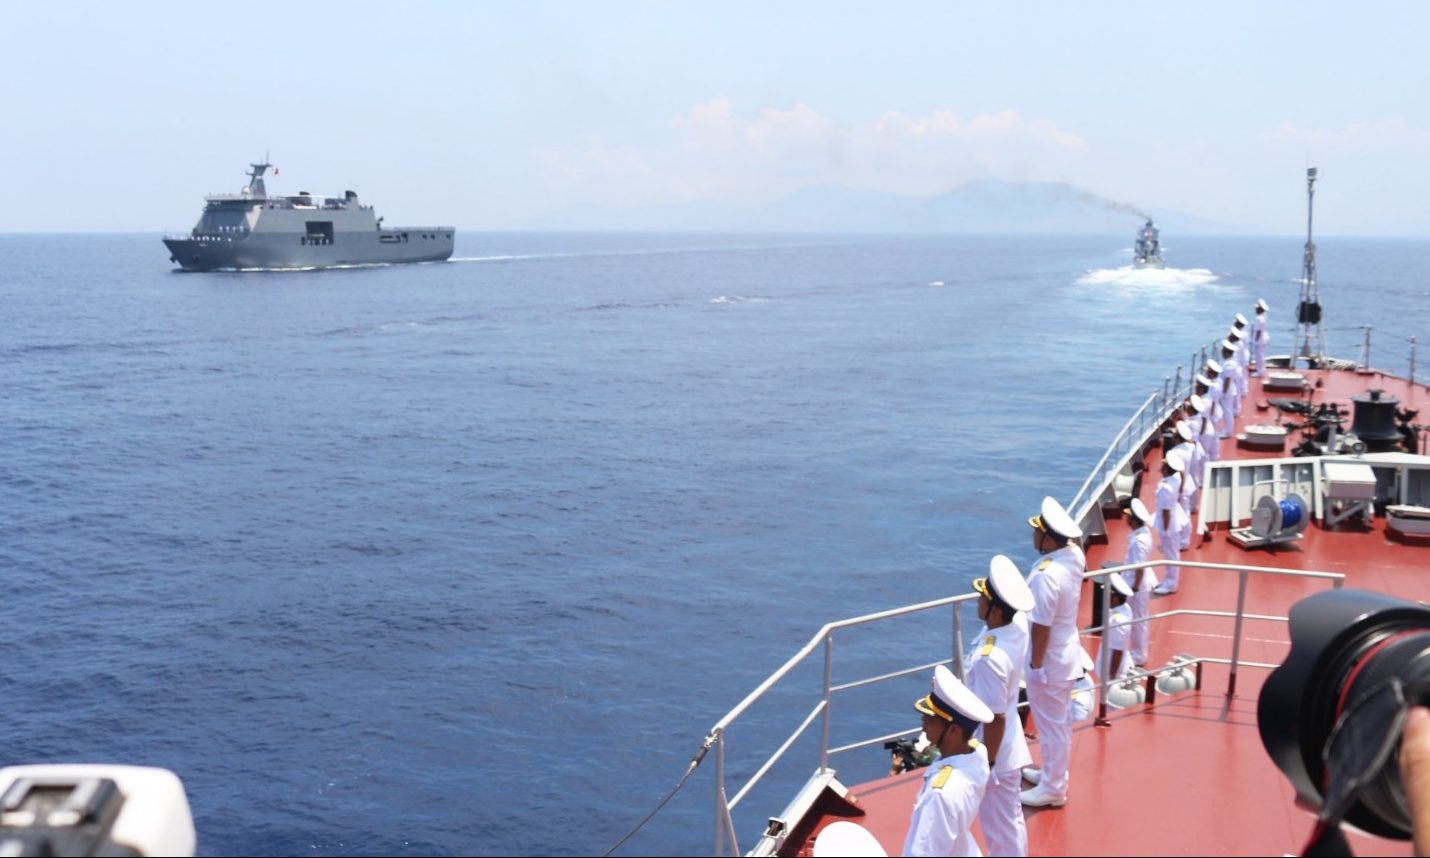 Đội hình duyệt binh gồm 10 tàu hải quân của các nước ASEAN.